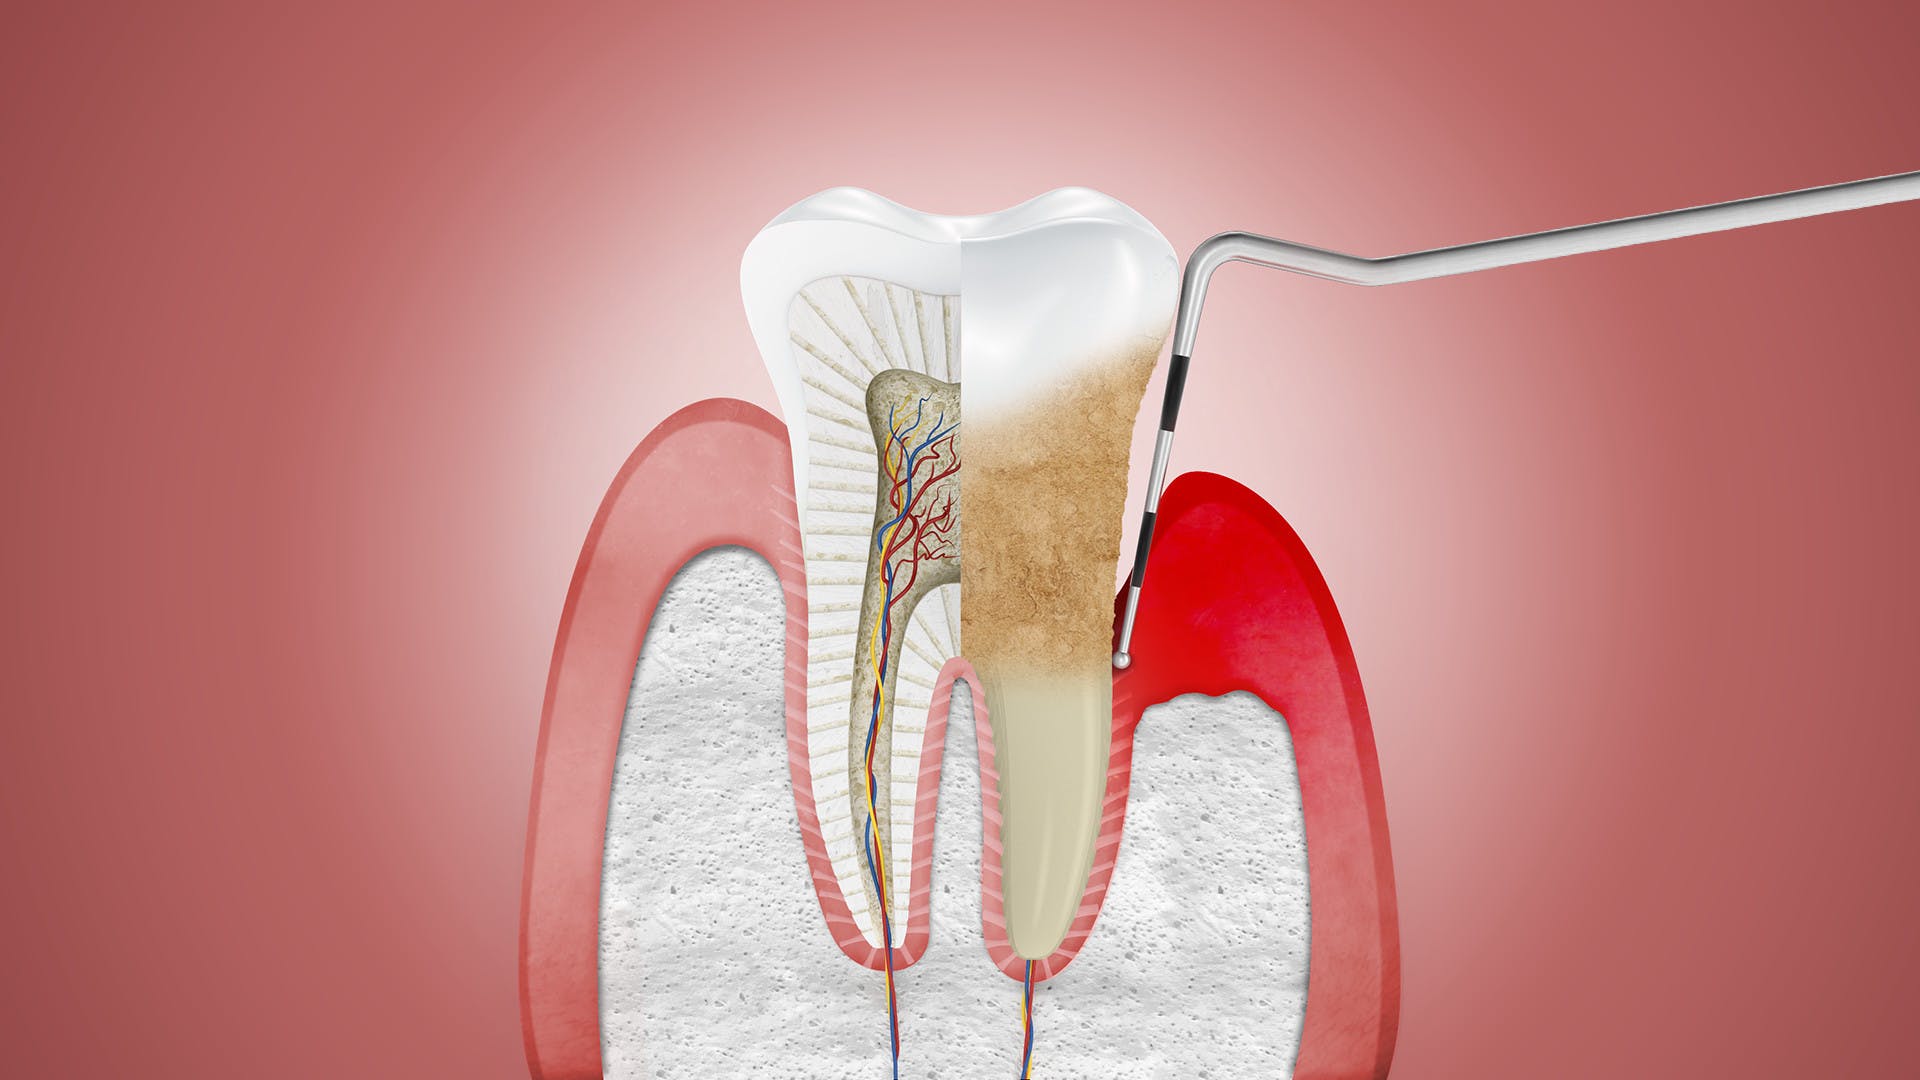 Bệnh nha chu là một bệnh nhiễm trùng gây phá hủy mô nâng đỡ quanh răng